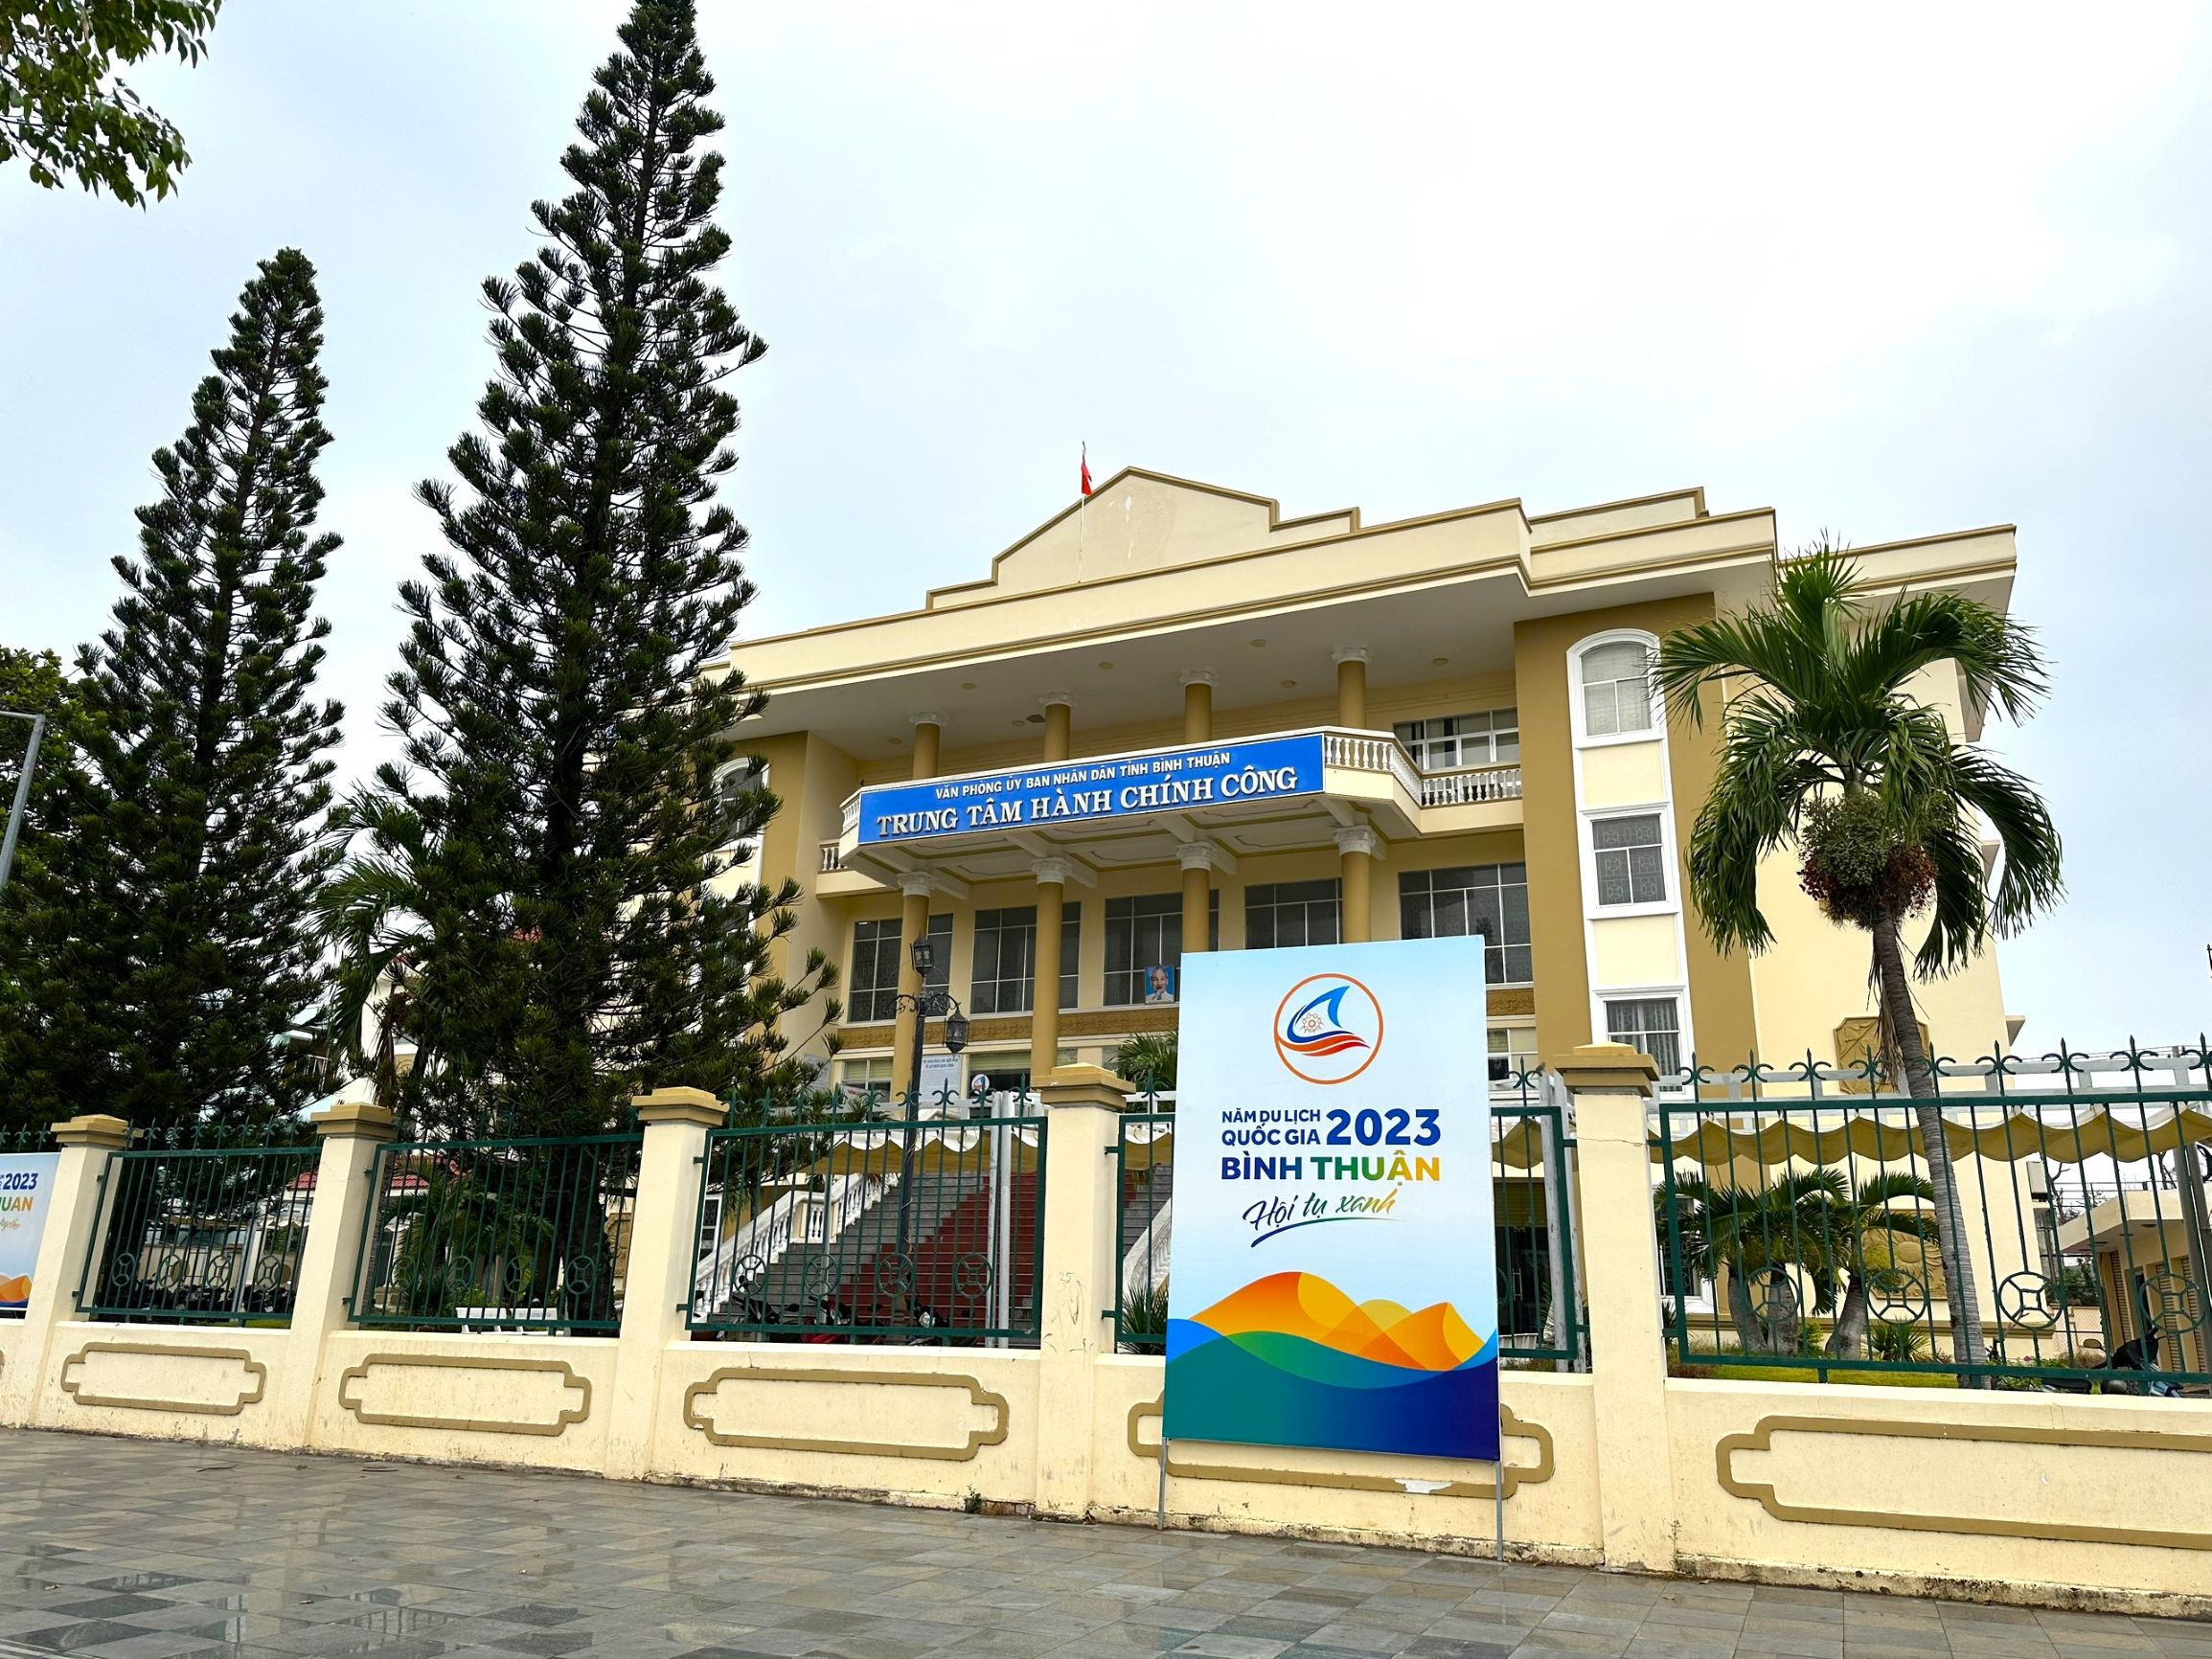 Trung tâm Hành chính công tỉnh Bình Thuận.